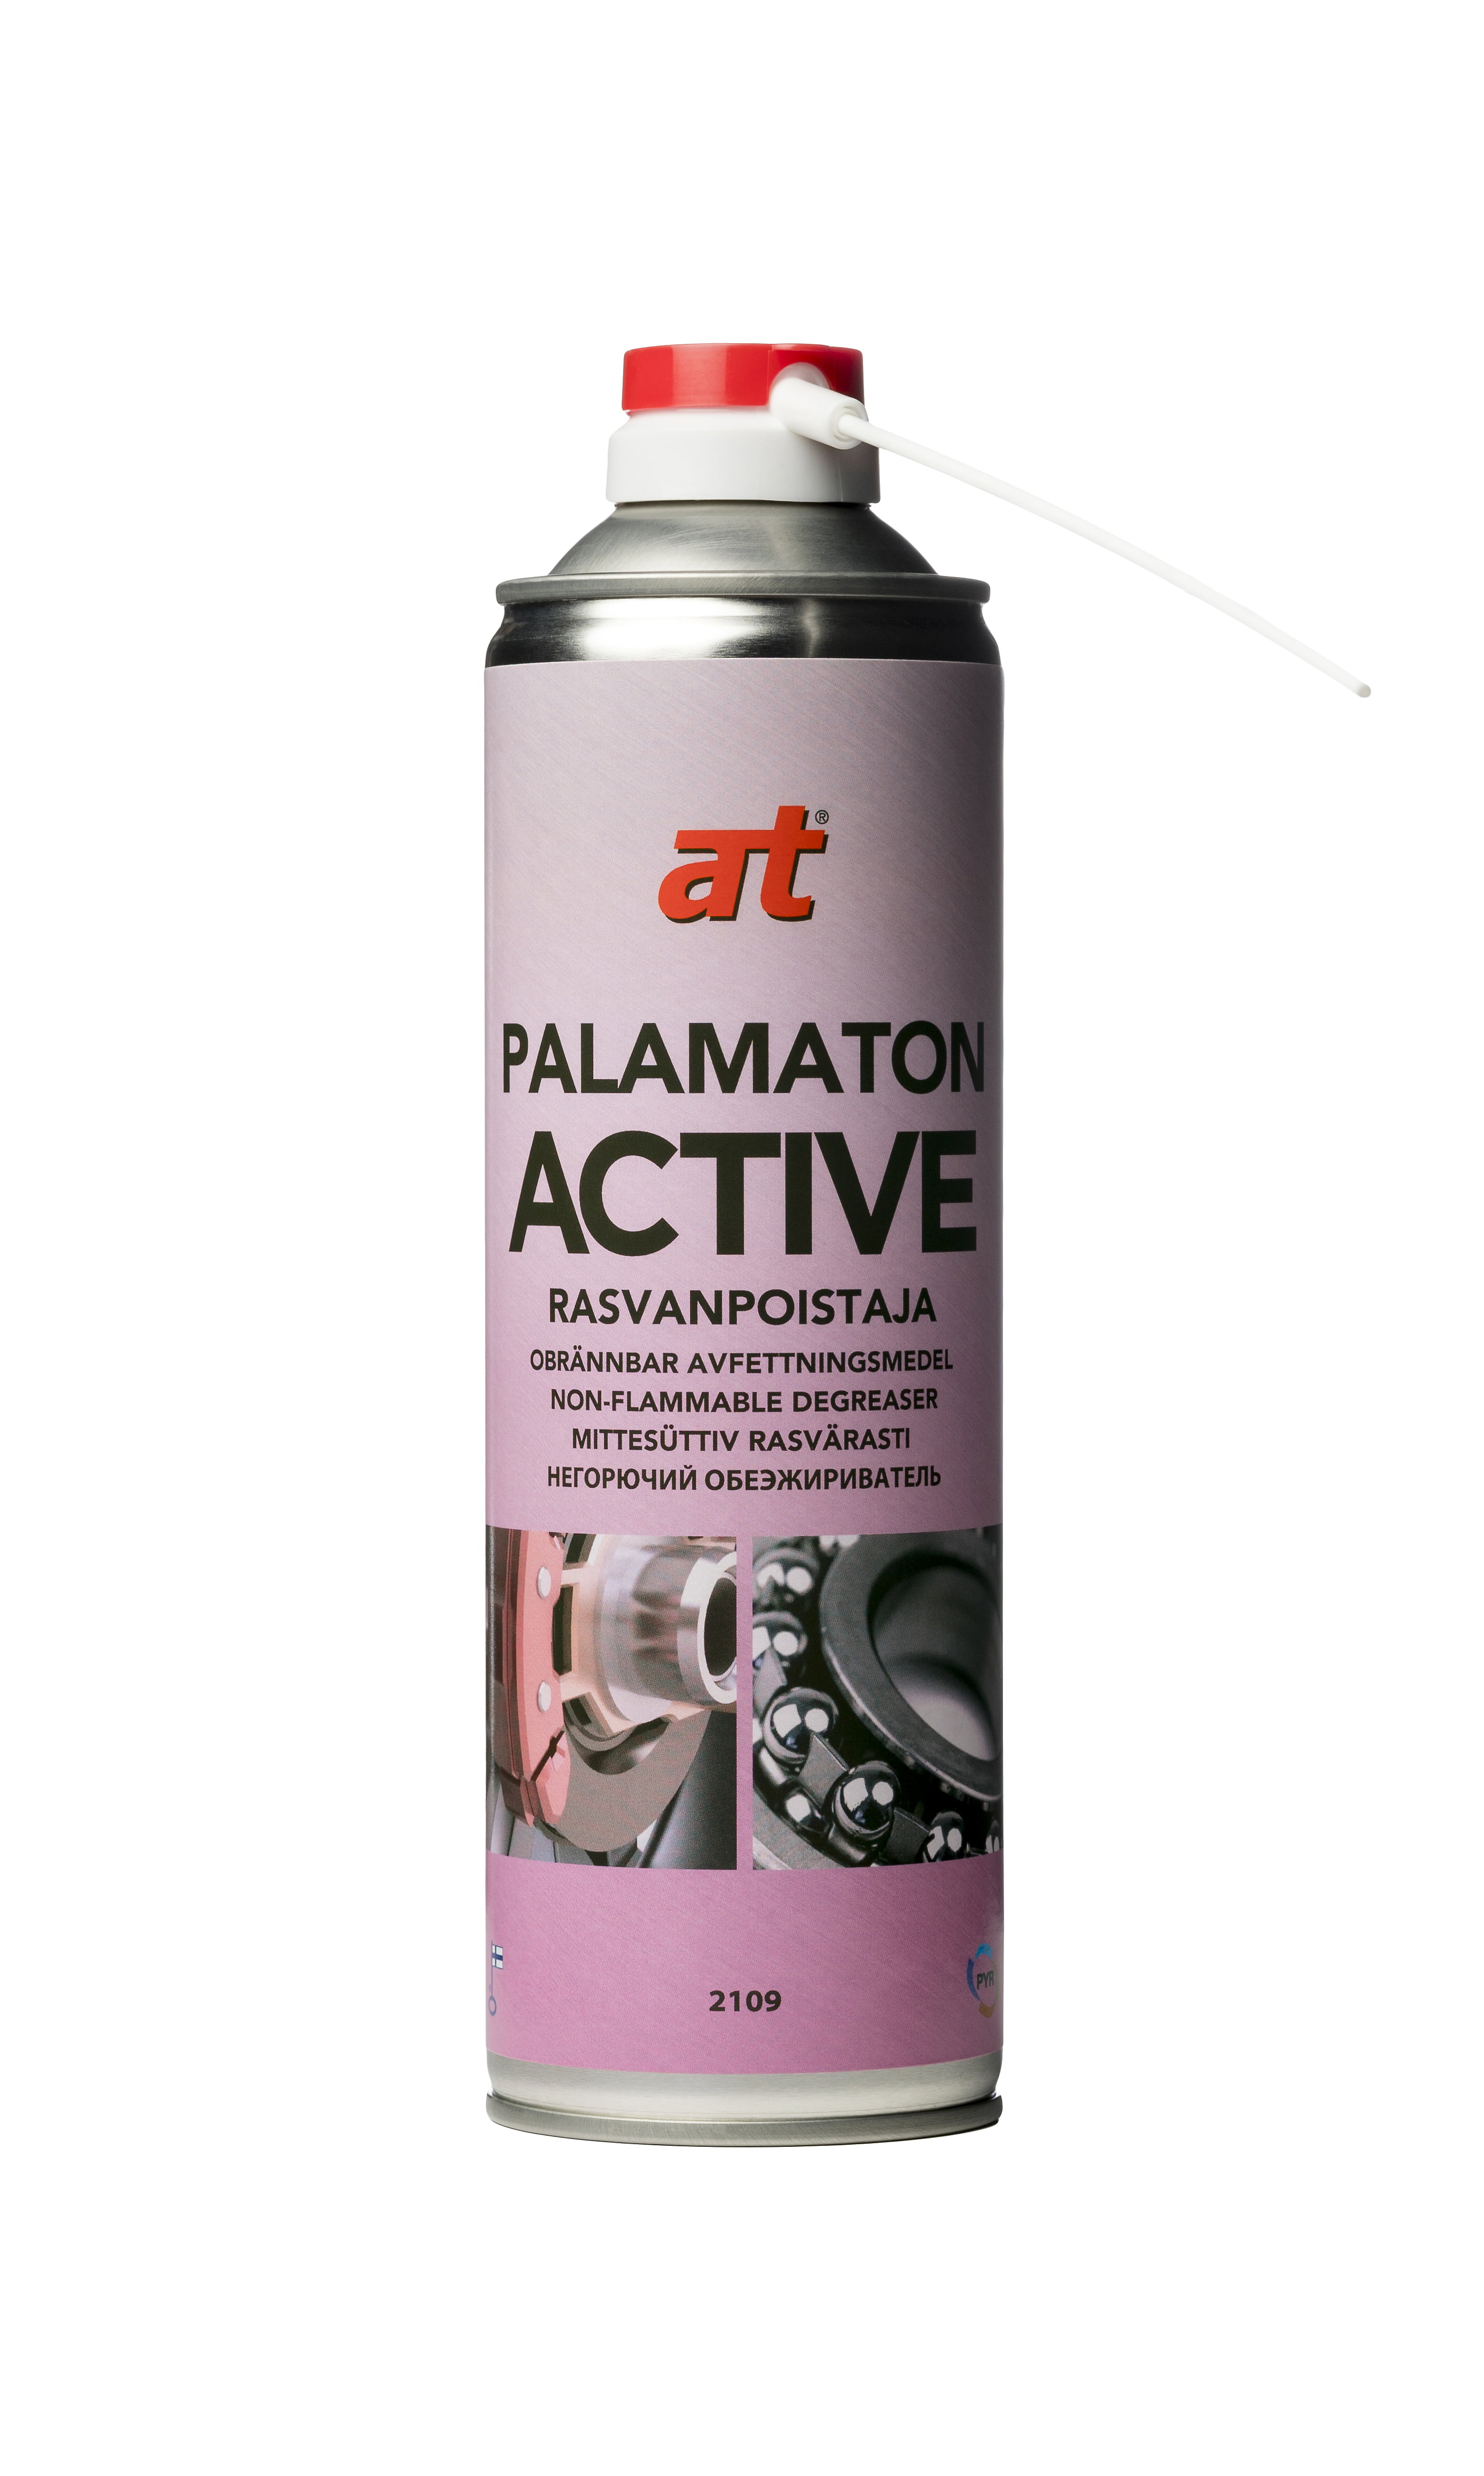 Palamaton Active 2109. 7318, 7325, 7319